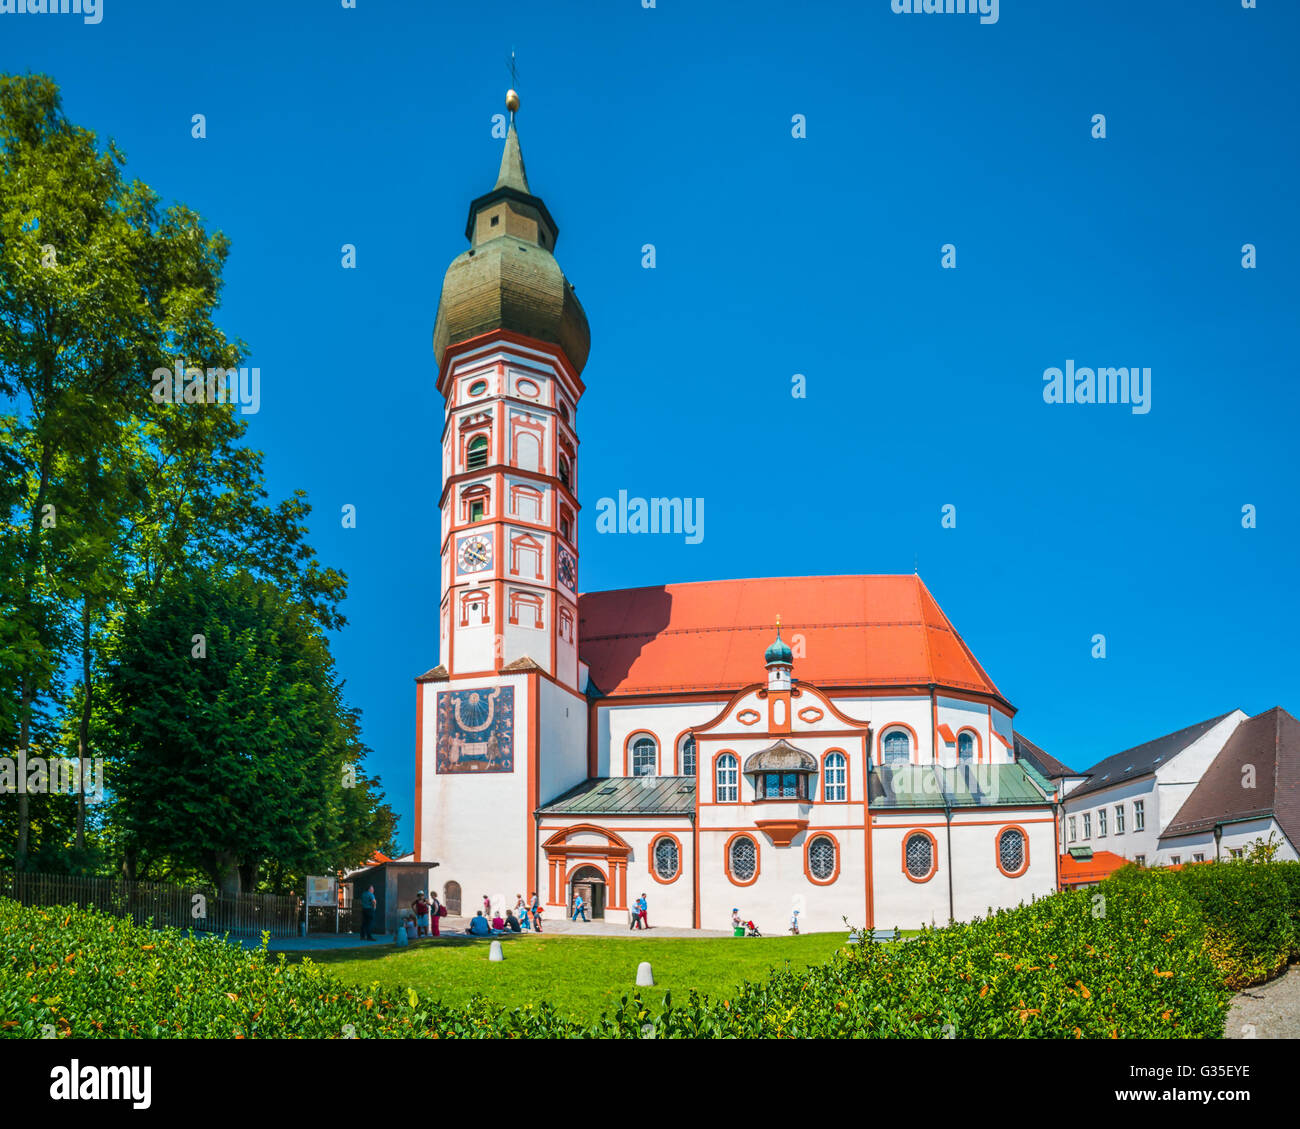 Belle vue de la ville historique de Andechs Abbaye en été sur une journée ensoleillée, district de Munich, Haute-Bavière, Allemagne Banque D'Images